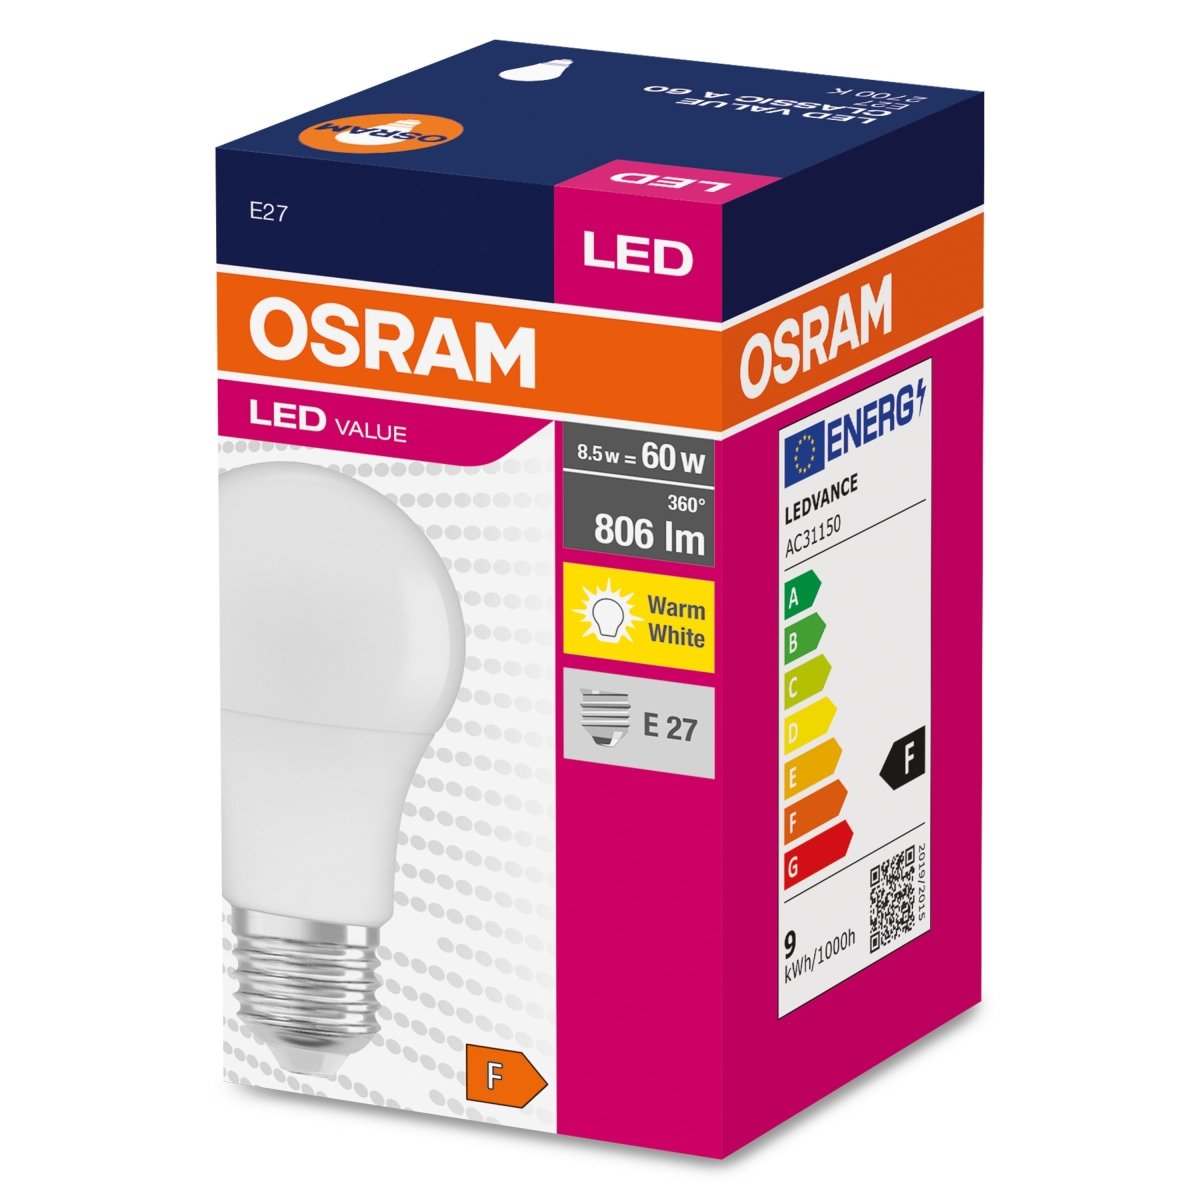 Żarówka LED CLA E27 8,5W LED VALUE OSRAM matowa, odpowiednik 60W, barwa ciepła, 1 szt. - eshop LEDVANCE 4052899326842